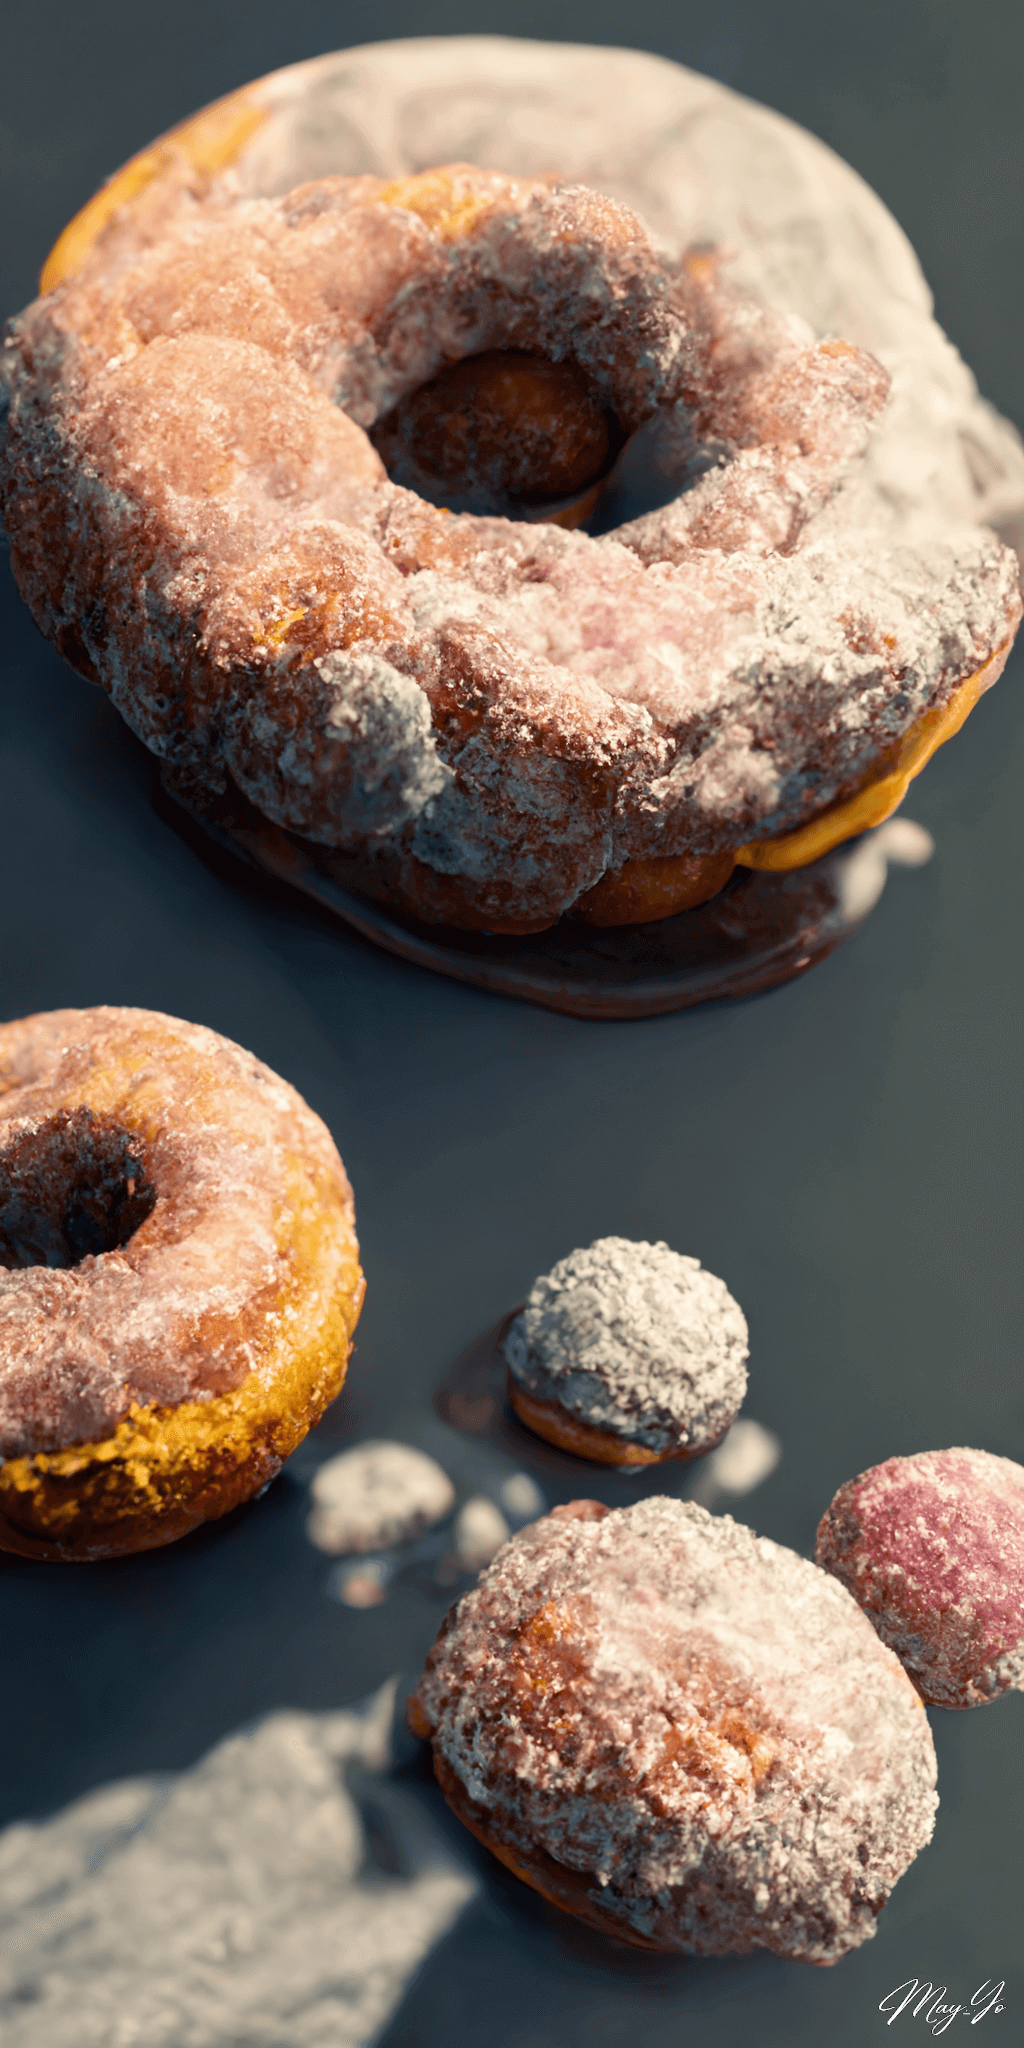 リアルな砂糖がけチョコレートドーナッツの壁紙イラスト 美味しそうなシュガーグレーズドーナツの待受 AIイラスト待受 縦長画像 tasty sugar donuts illustration sweet